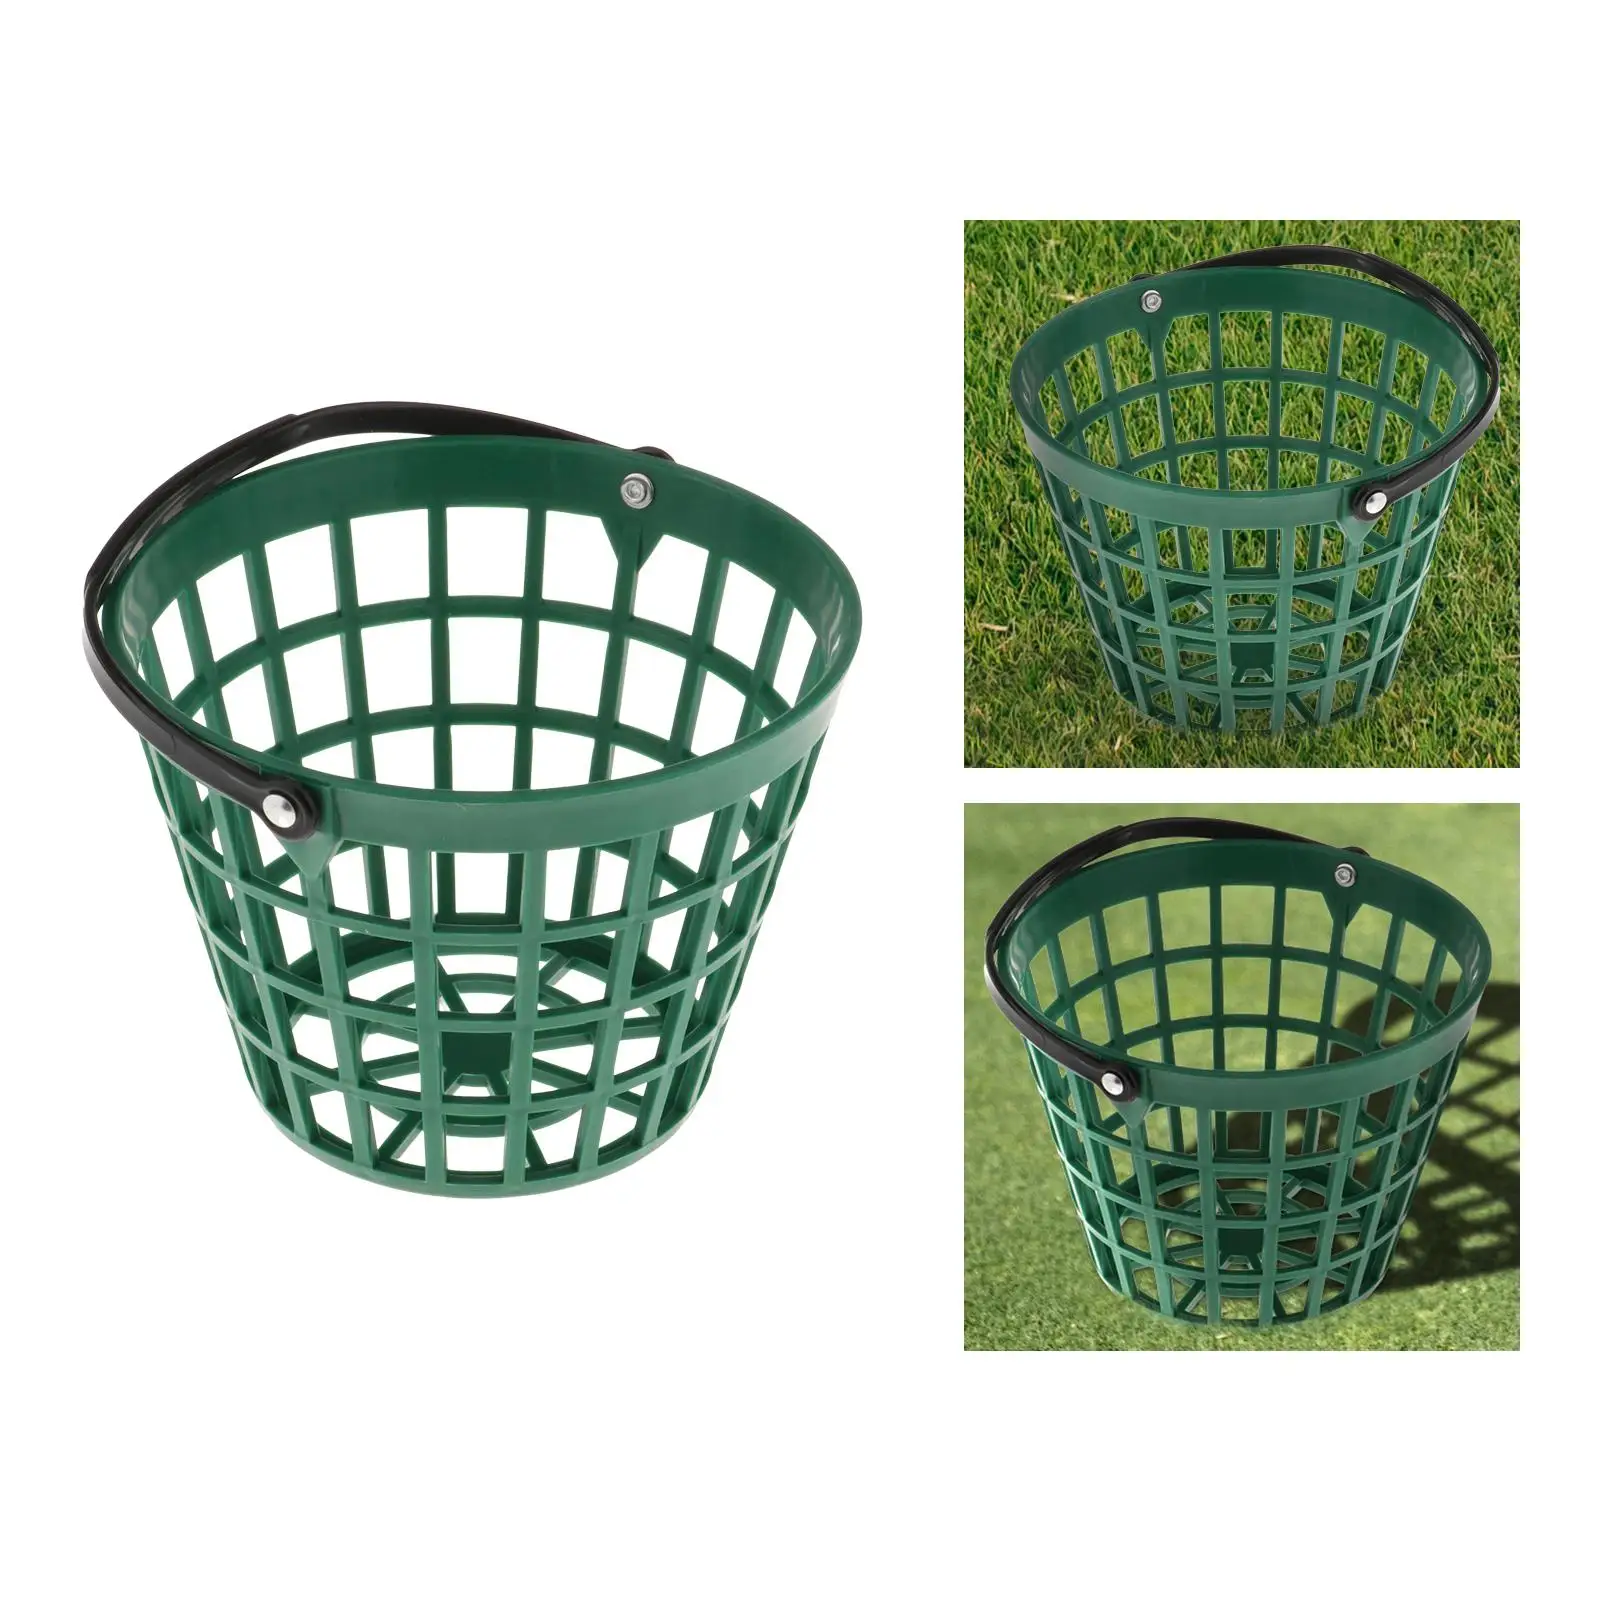 Небьющаяся корзина для мячей для гольфа, прочное пластиковое ведро для хранения мячей на открытом воздухе настенный набор баскетбольных обручей для детей домашняя спортивная корзина для фитнеса баскетбольные обручи для мячей подарки для маль